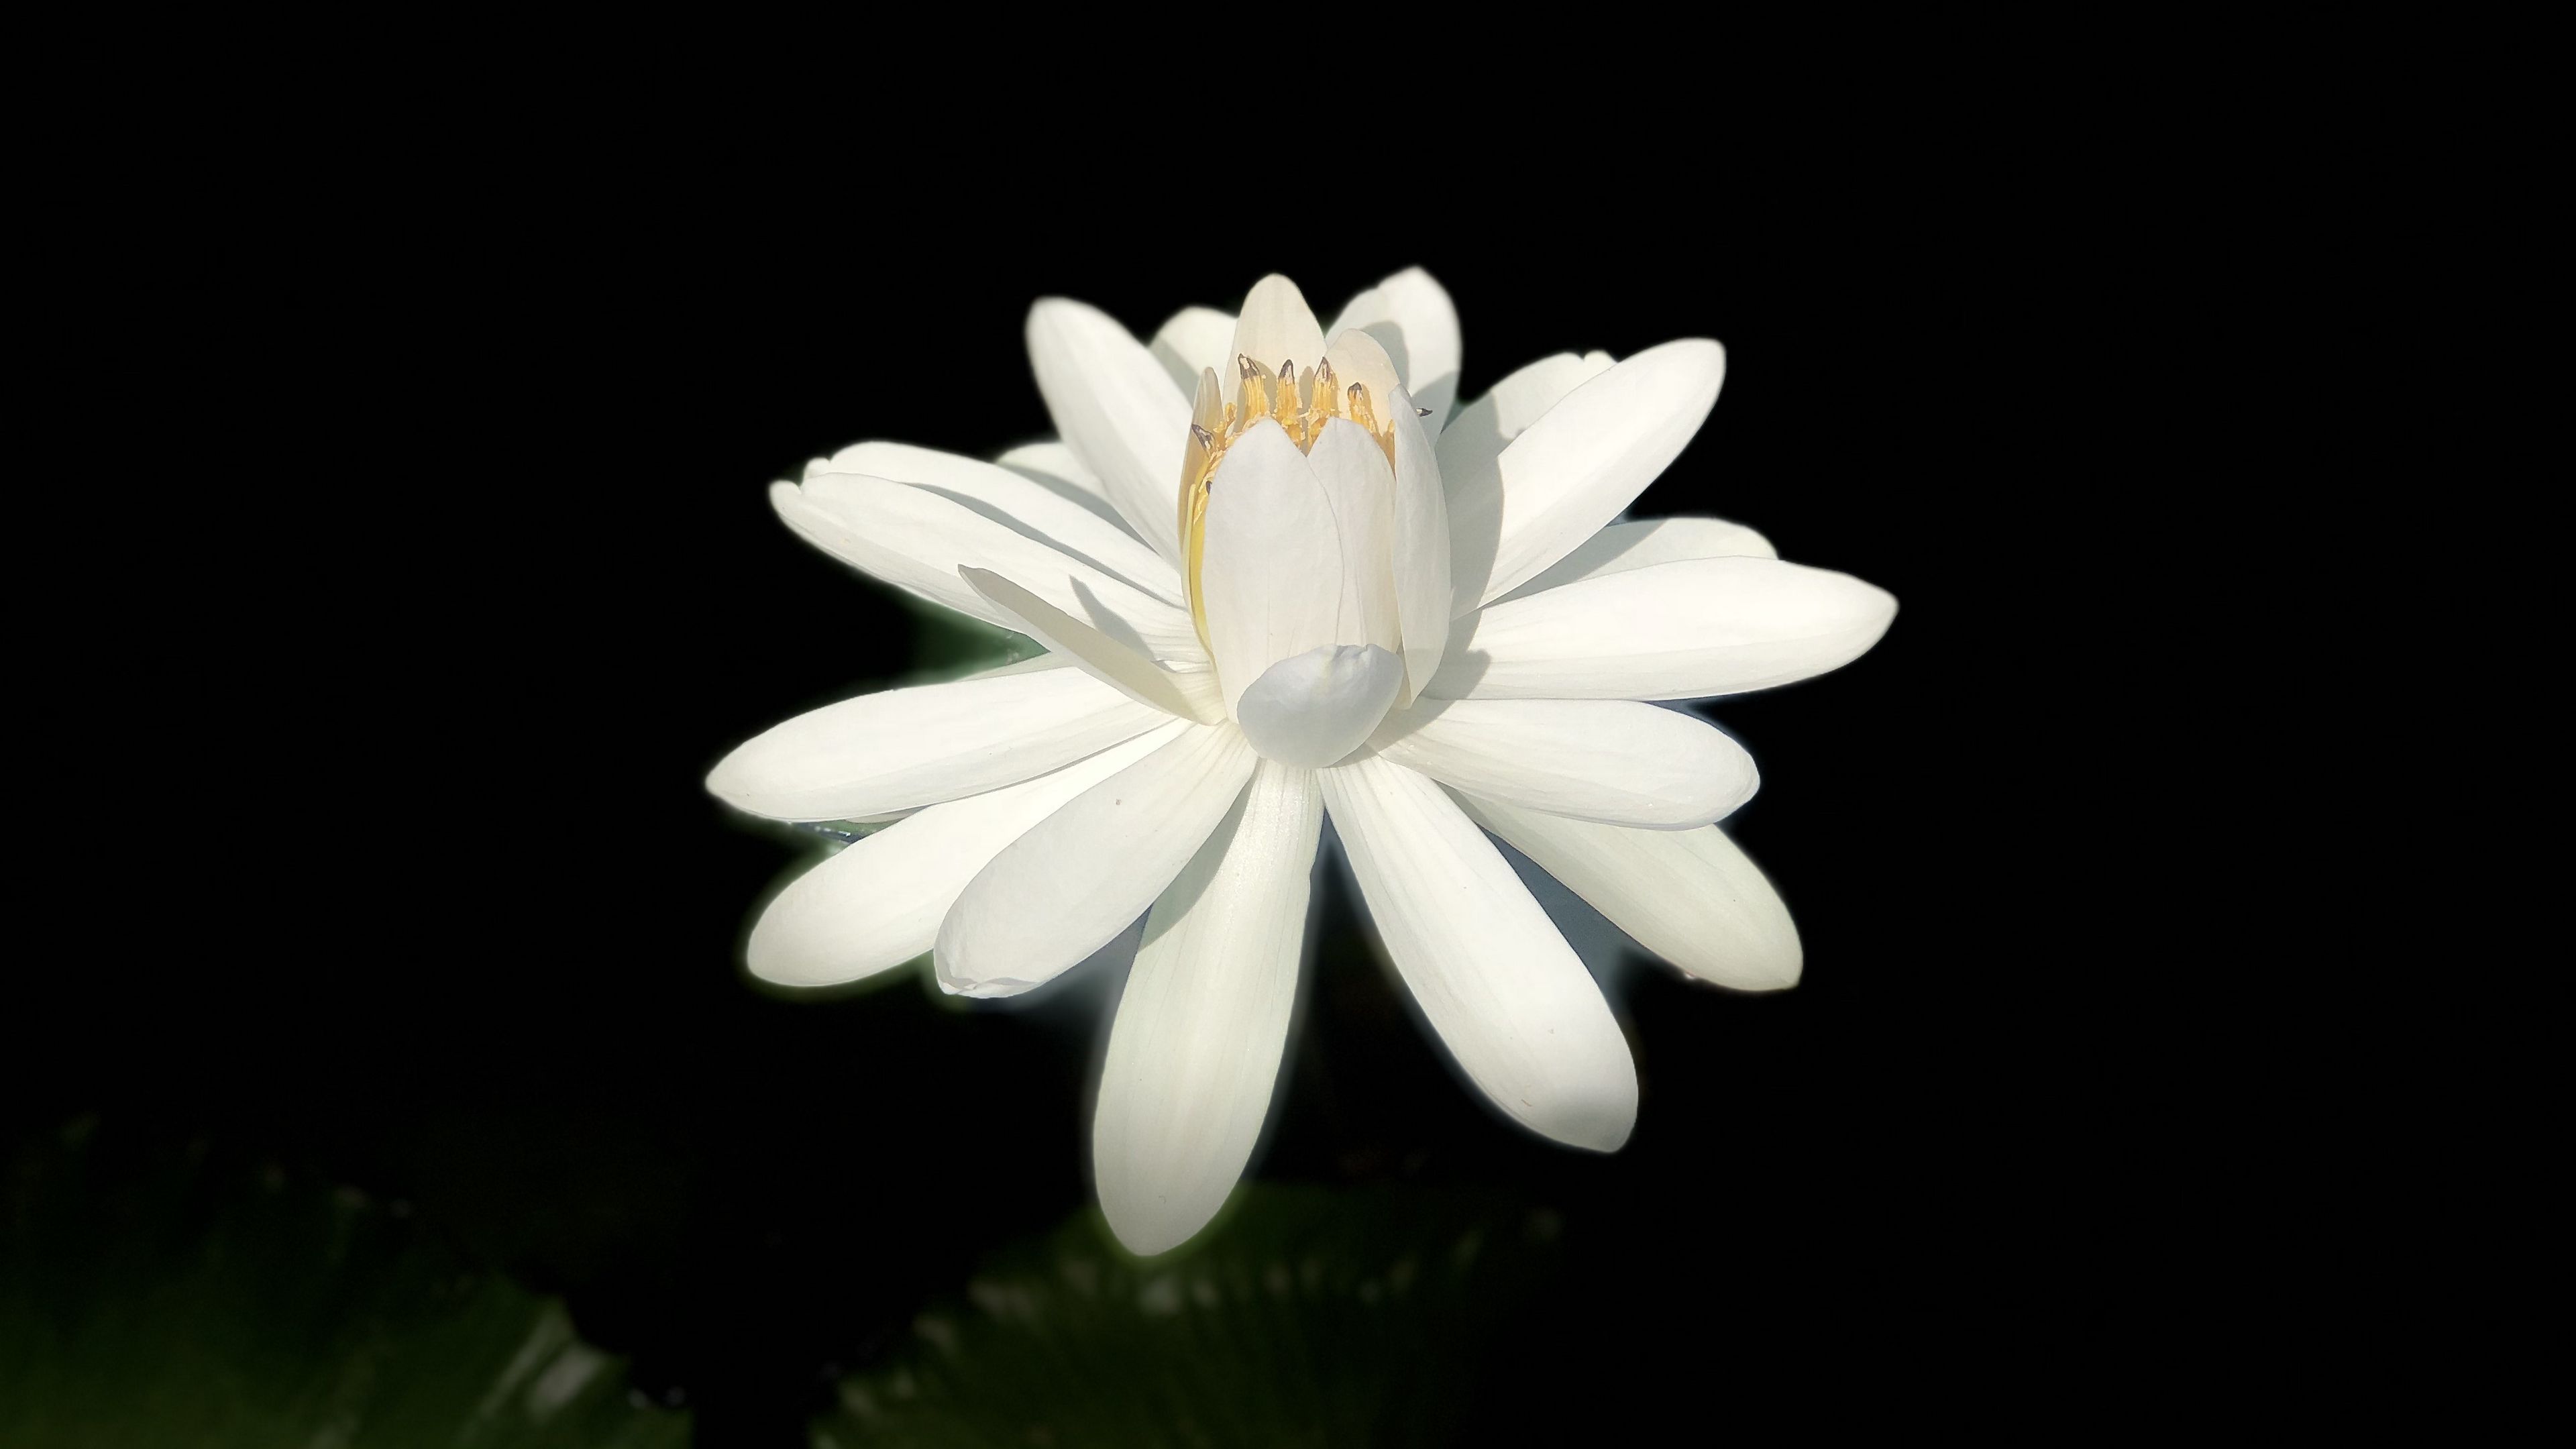 Hình ảnh hoa Sen trắng trong bóng đêm